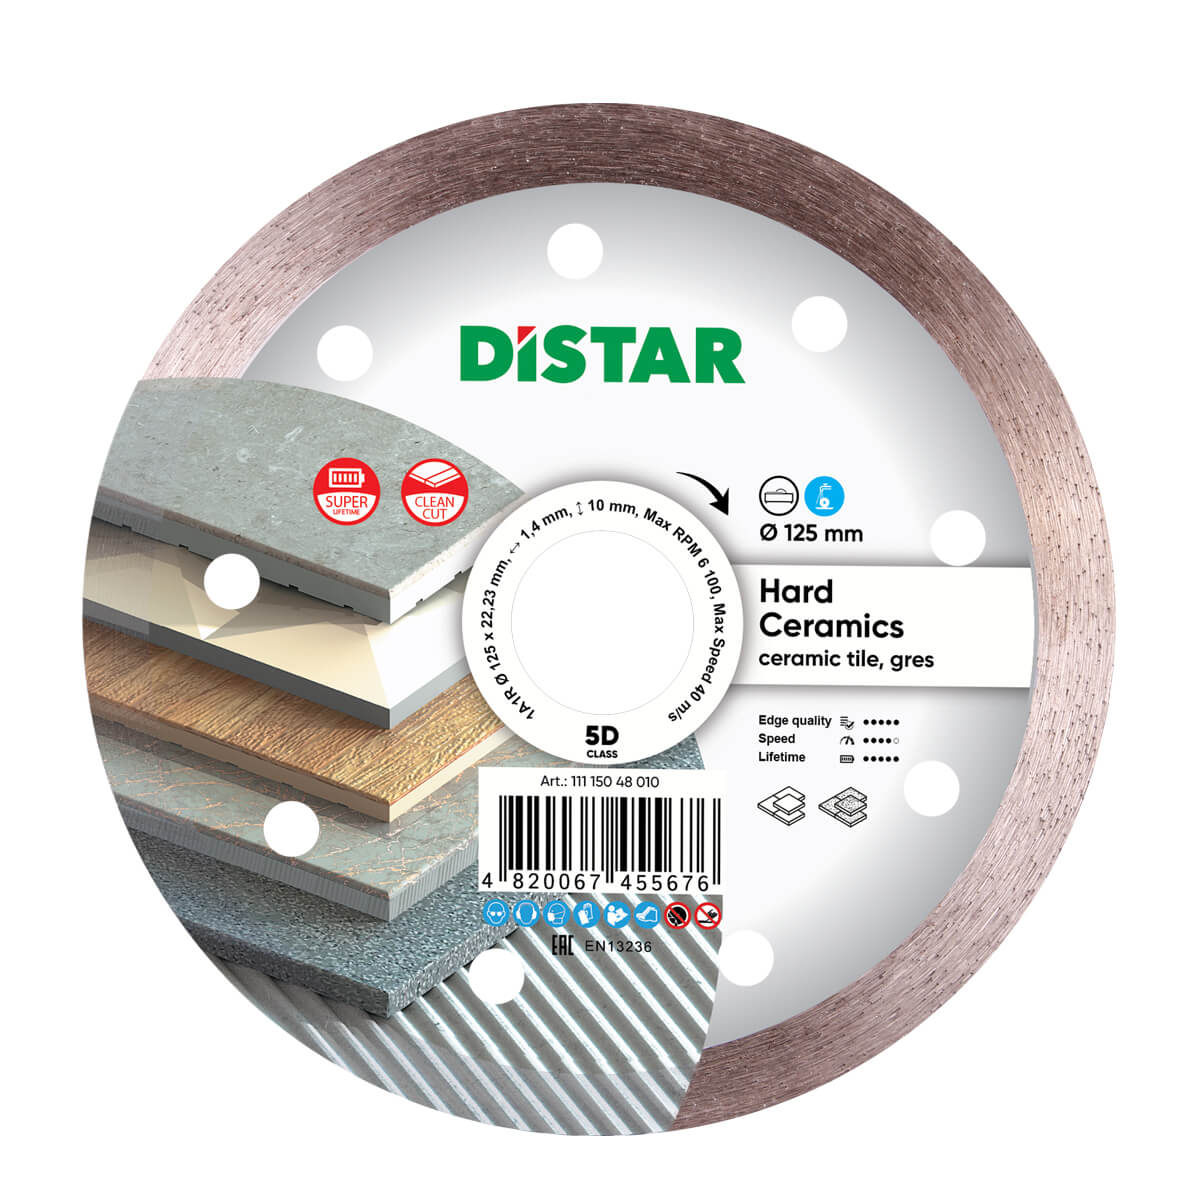 Диск алмазный отрезной по керамограниту и керамике для УШМ Distar 125 мм Hard ceramics 5D диск алмазный отрезной по керамике и керамограниту для ушм distar 1a1r 125 мм edge dry 7d